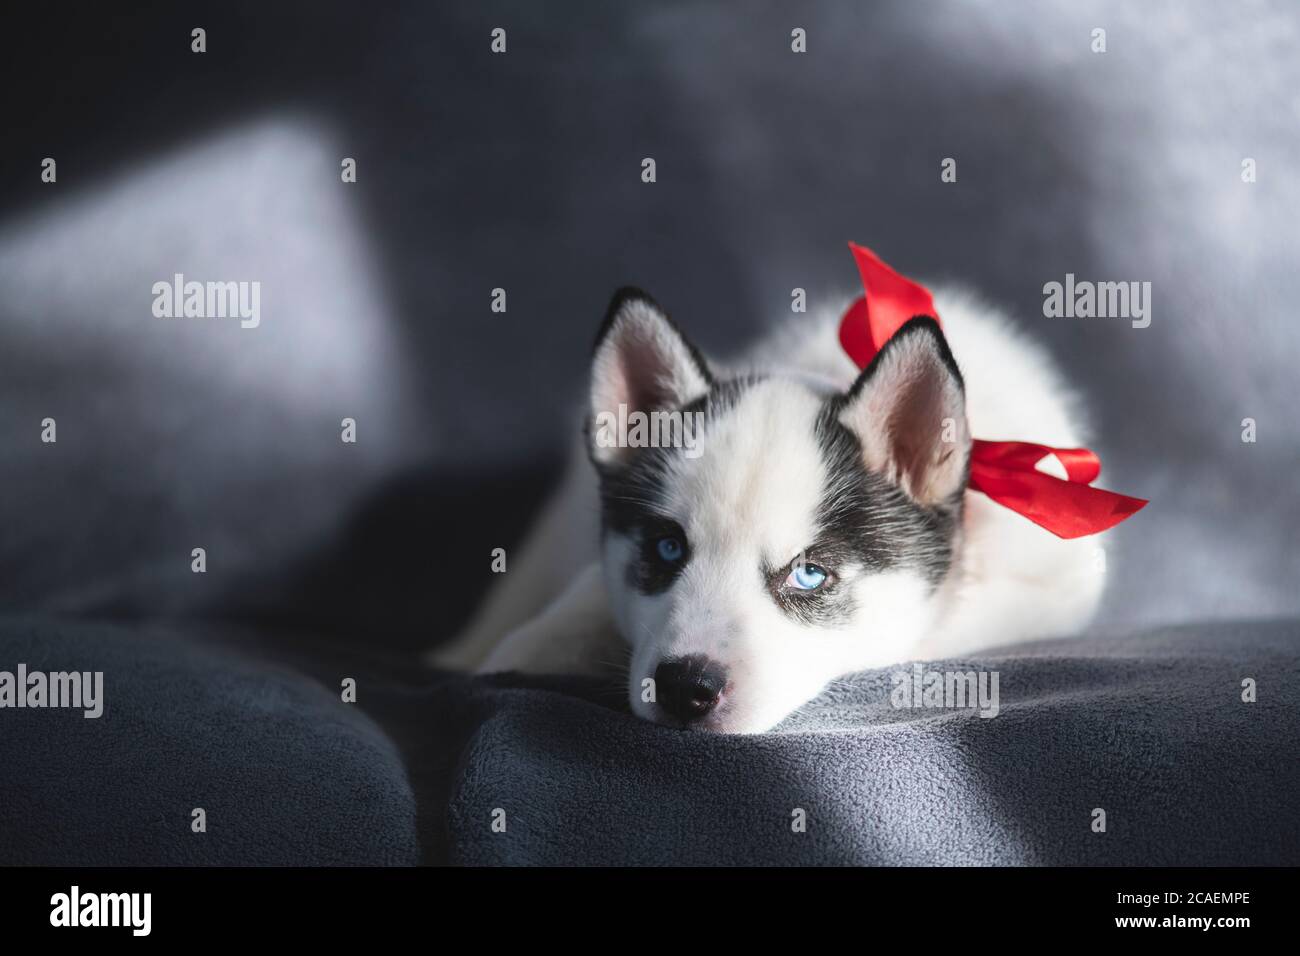 Ein kleiner weißer Hund Welpe Rasse sibirischen Husky mit roten Bogen schlafen auf grauem Teppich. Perfektes Geburtstagsgeschenk für Ihr Kind. Hunde und Tierfotografie Stockfoto